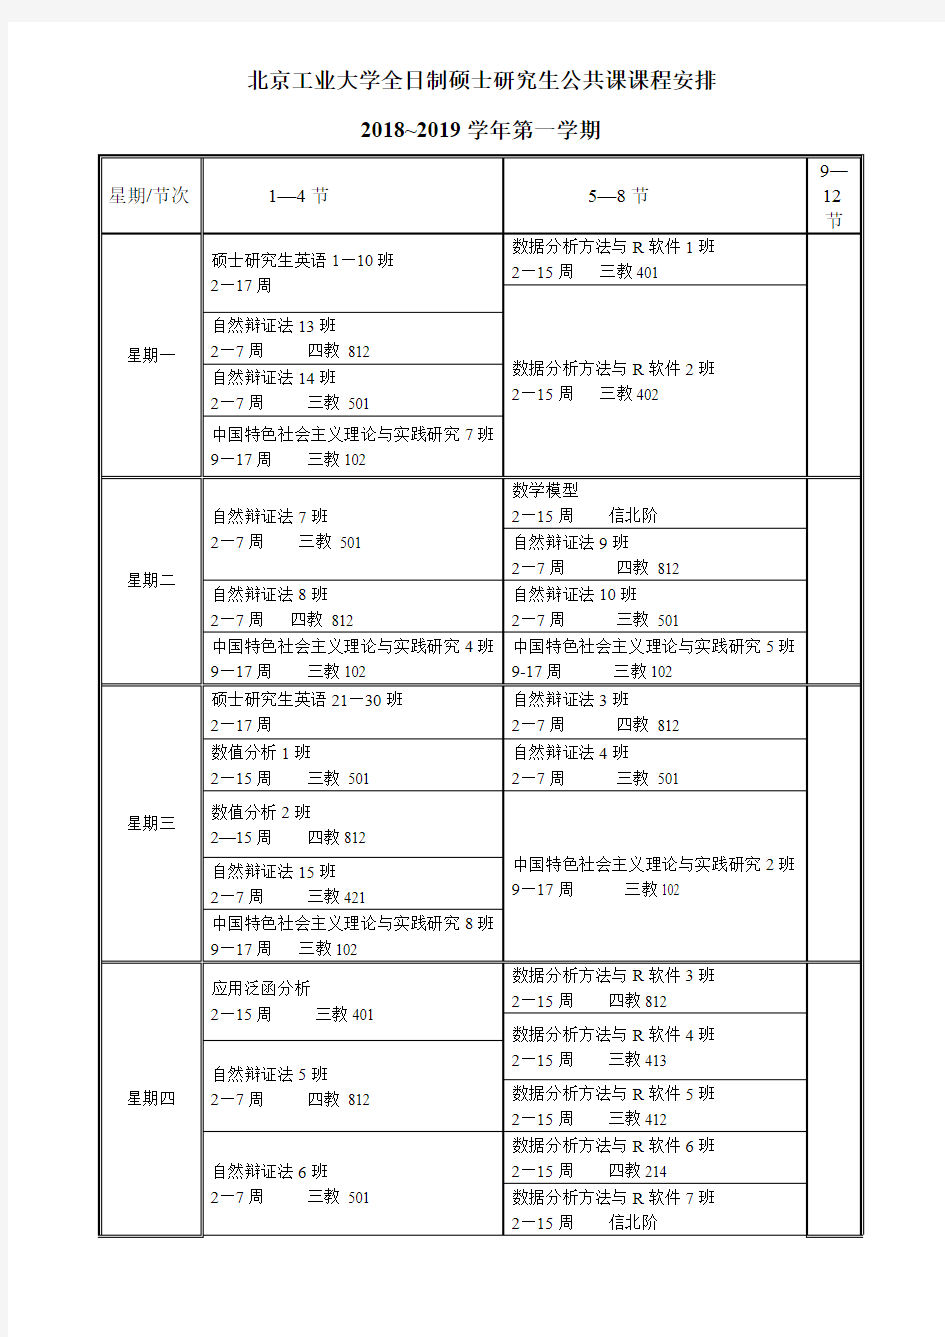 北京工业大学全日制硕士研究生公共课课程安排